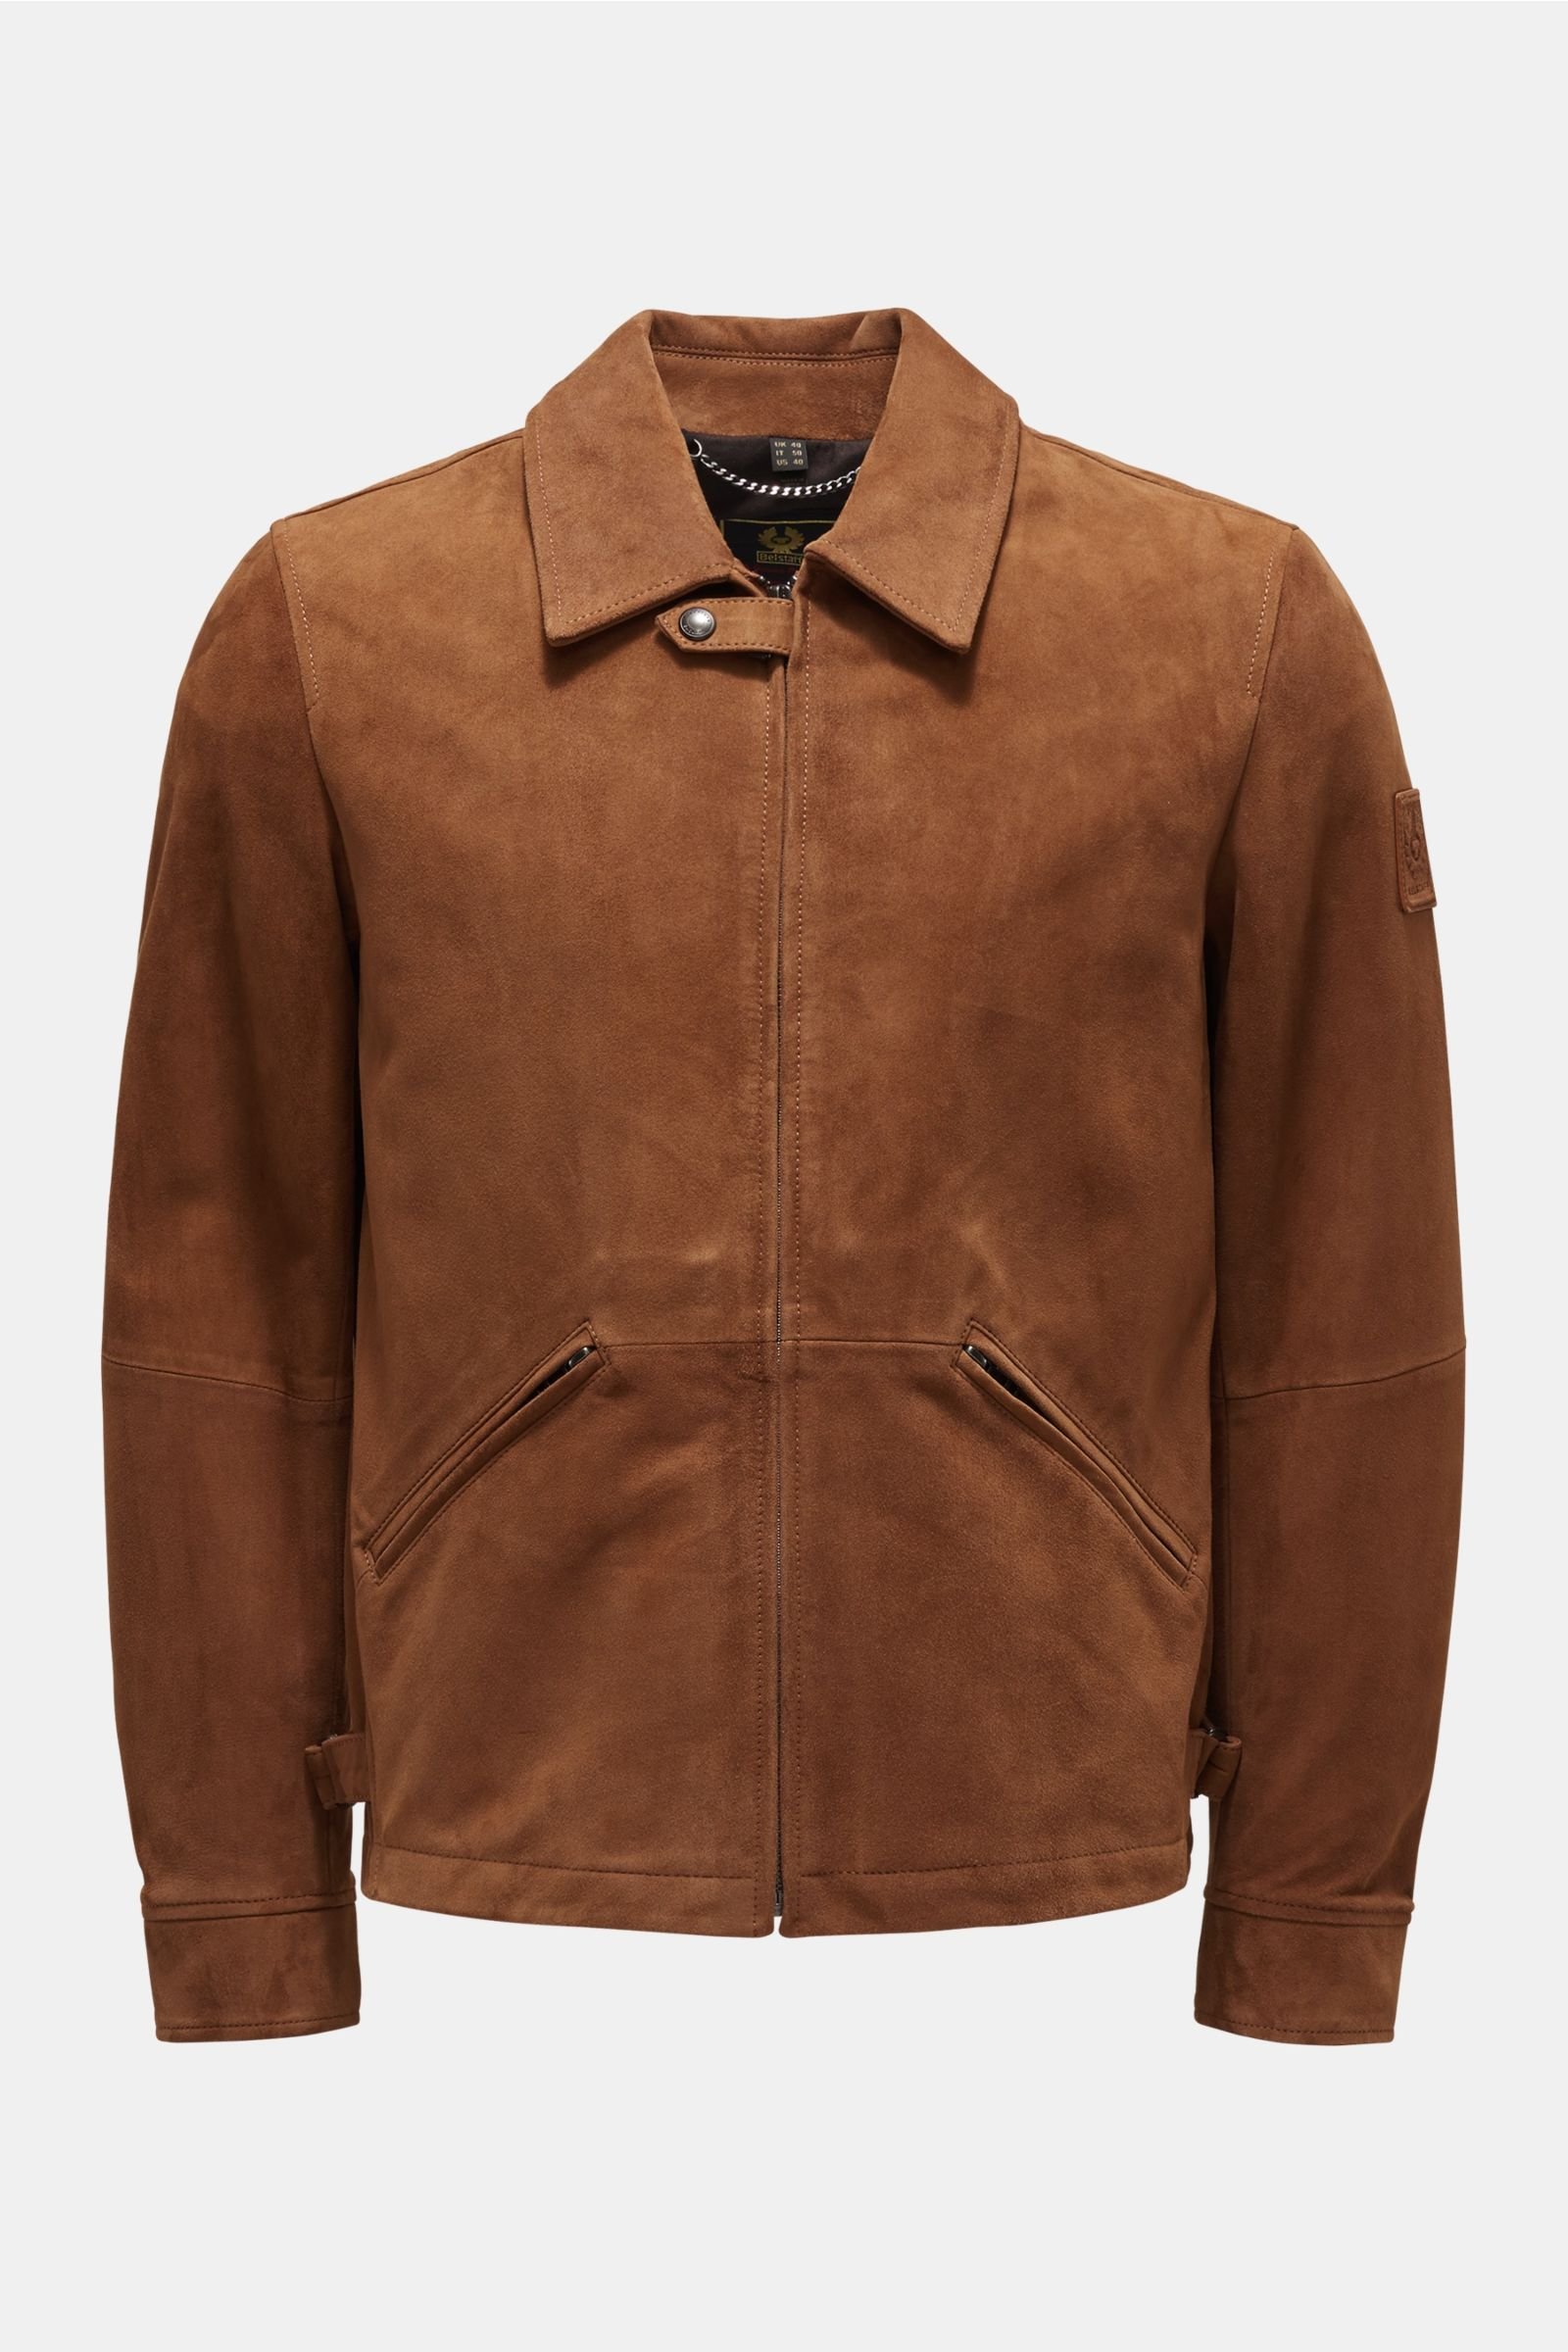 BELSTAFF suede jacket 'Cooper' brown | BRAUN Hamburg